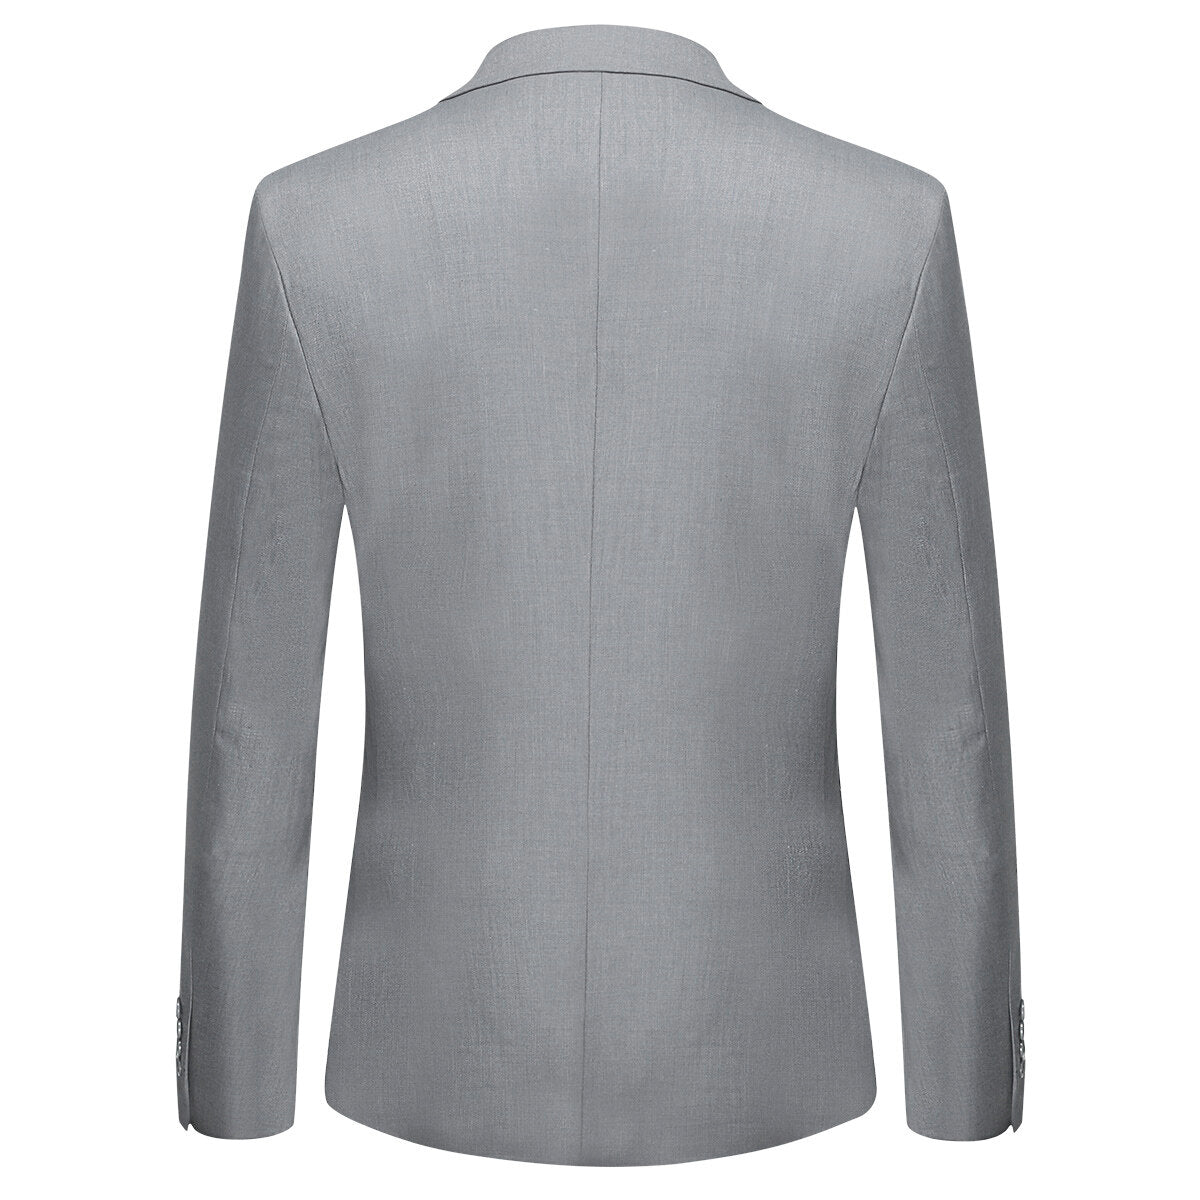 Grey Casual Blazer Slim Fit Business Blazer